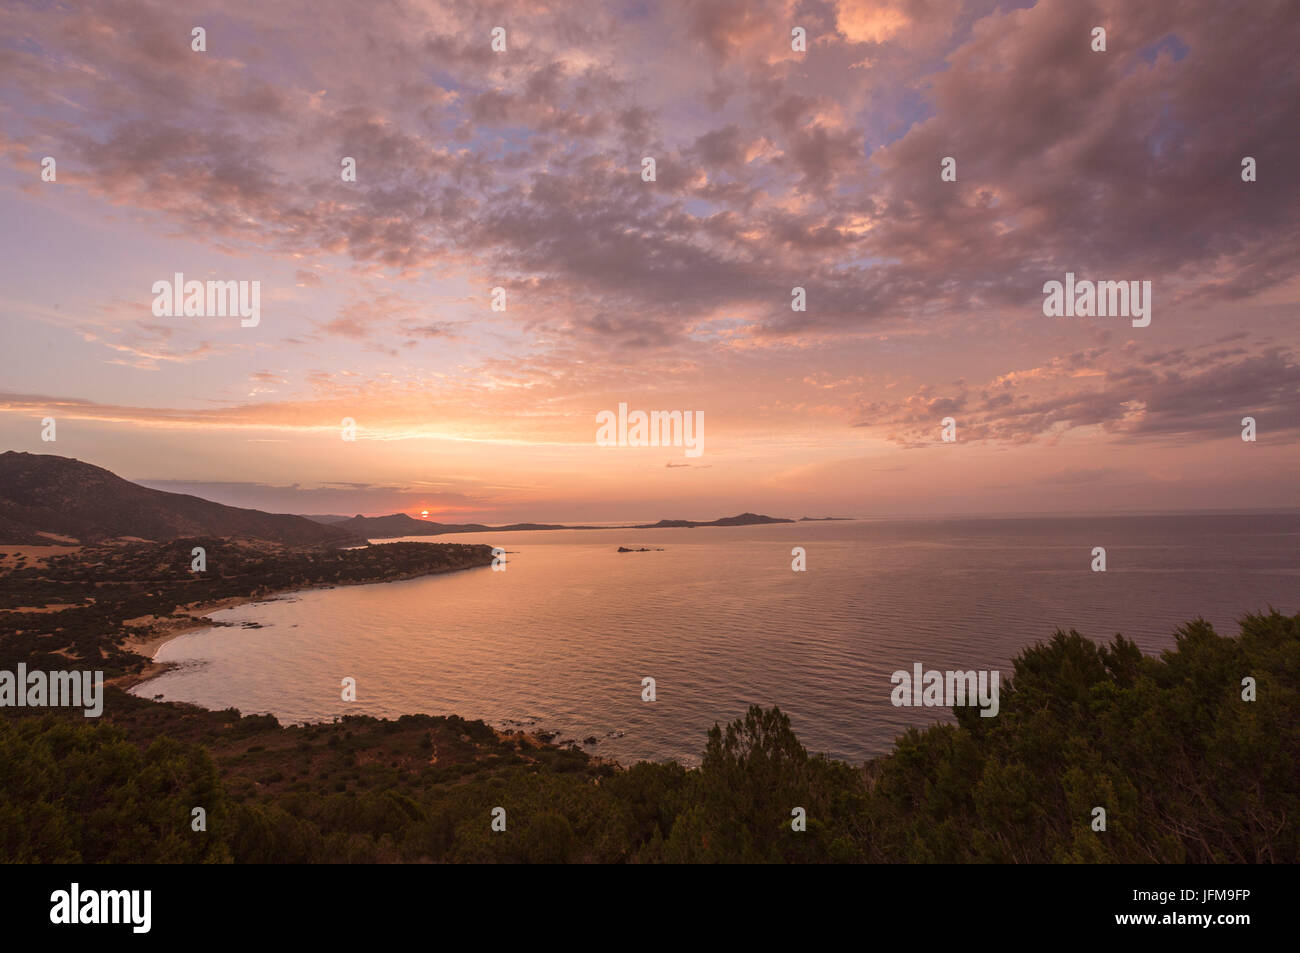 Die Farben des Sonnenaufgangs spiegeln sich auf dem Meer rund um den Strand von Solanas Villasiumus Cagliari Sardinien Italien Europa Stockfoto